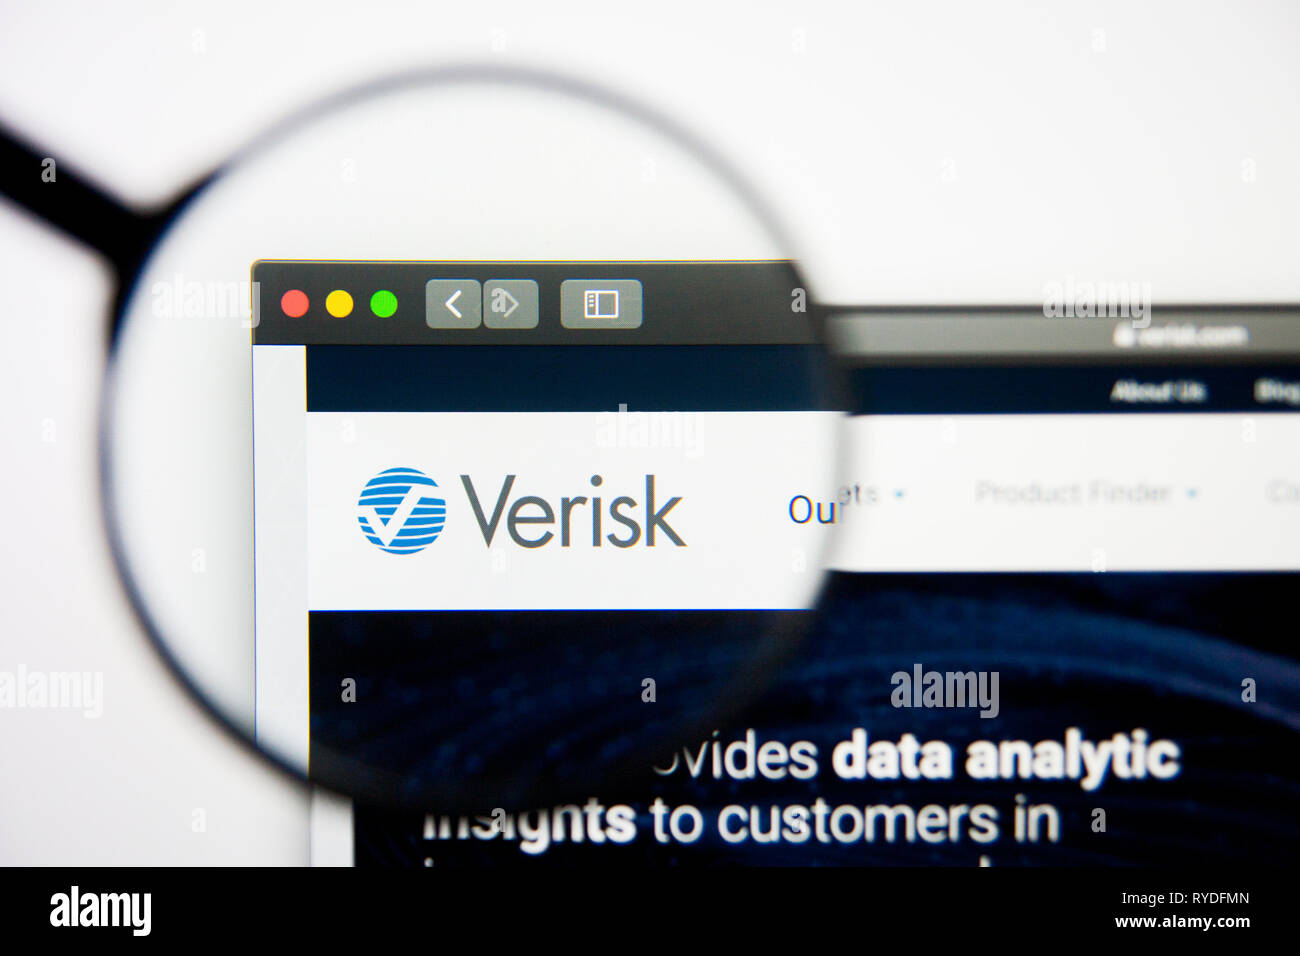 Los Angeles, Kalifornien, USA - 28. Februar 2019: Verisk Analytics Website Homepage. Verisk Analytics Logo sichtbar auf dem Display, Illustrative Stockfoto